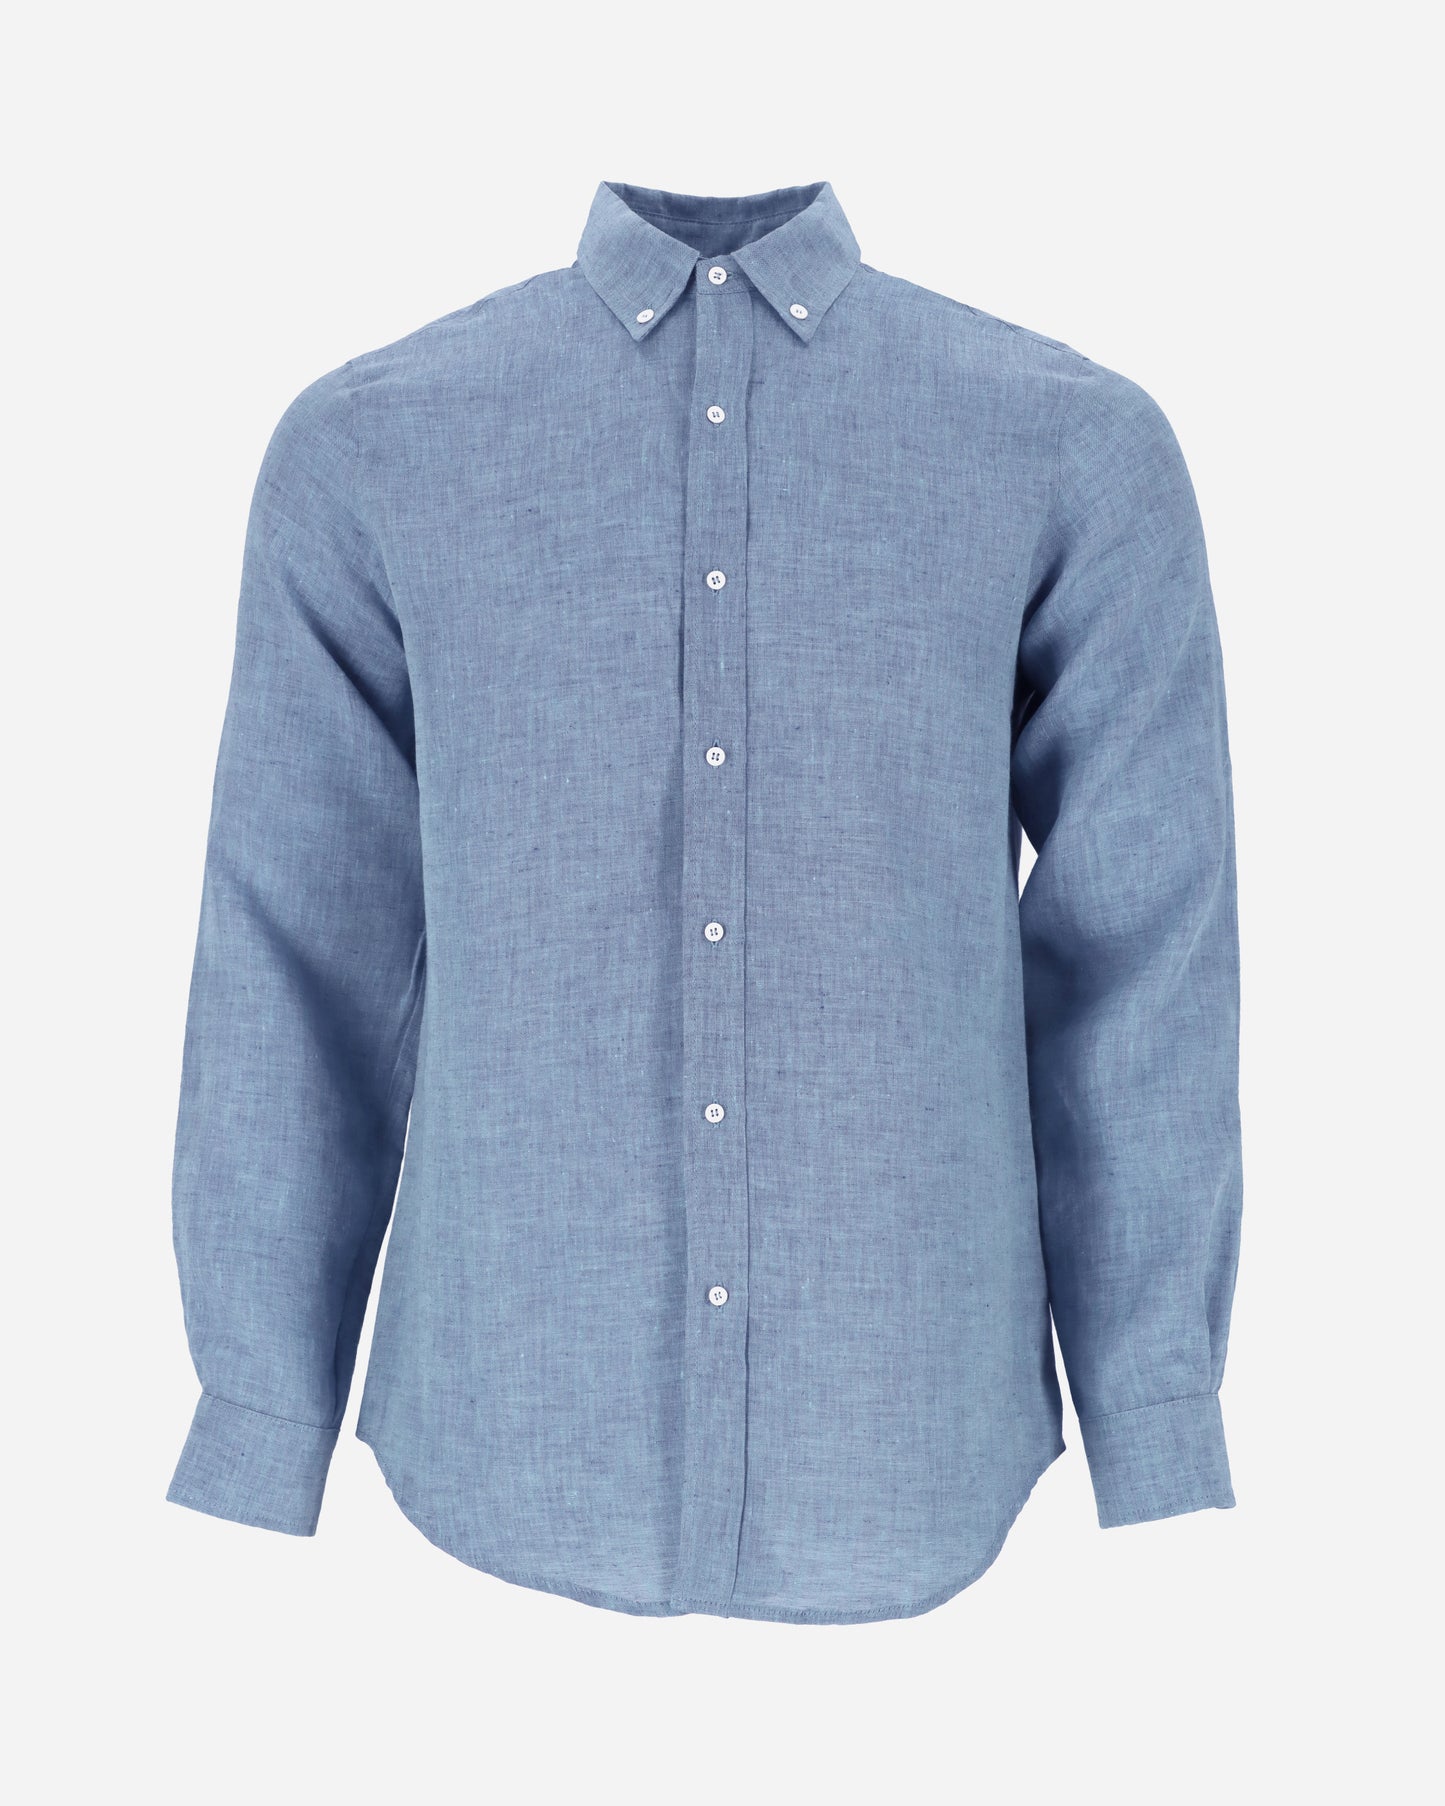 Men's classic linen shirt WENGEN in Denim chambray - MagicLinen